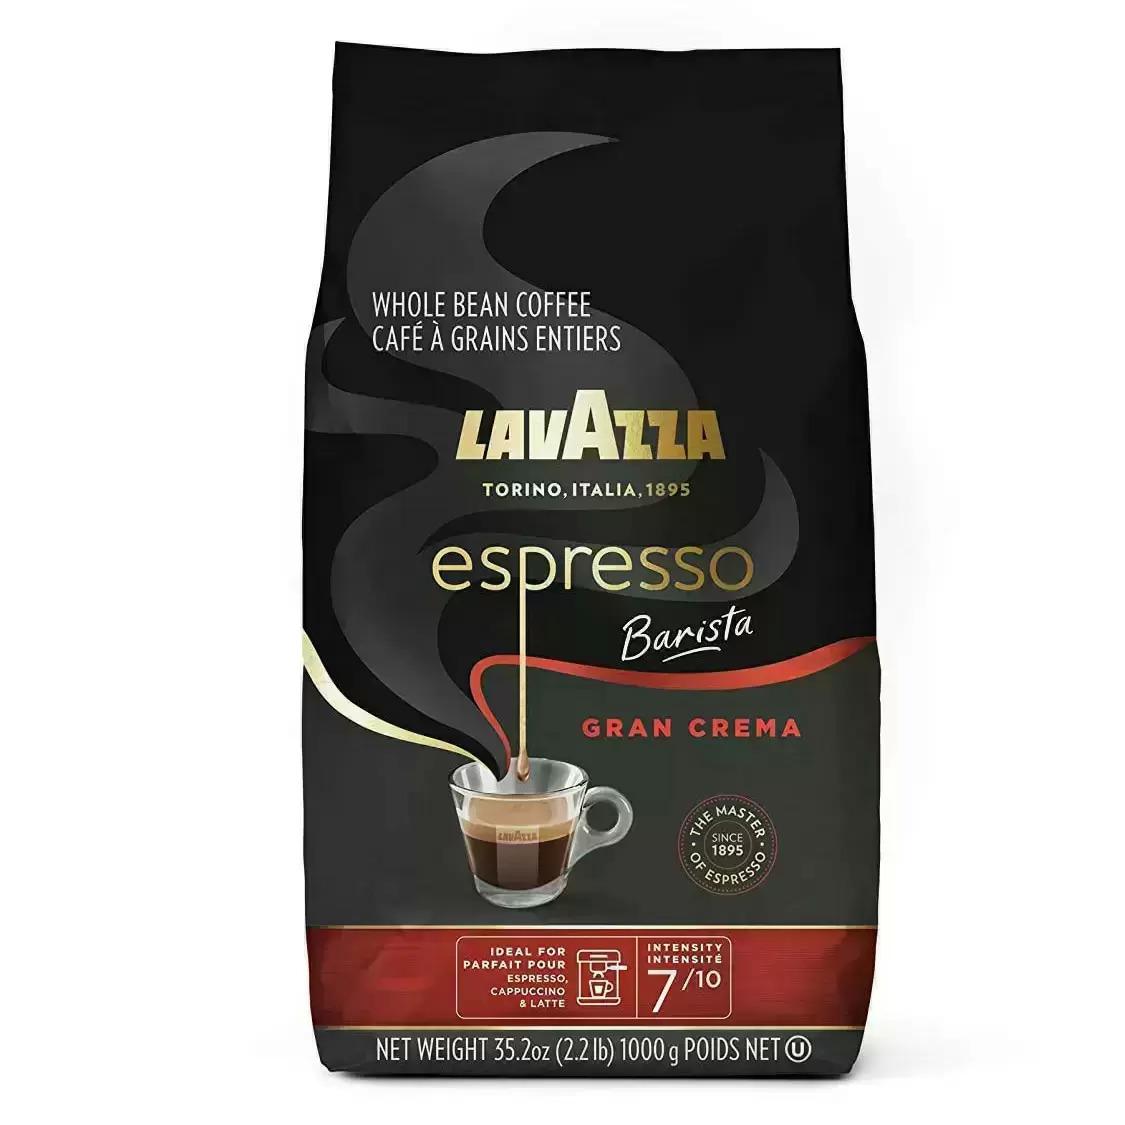 Lavazza Espresso Barista Gran Crema Whole Bean Coffee Blend for $11 Shipped